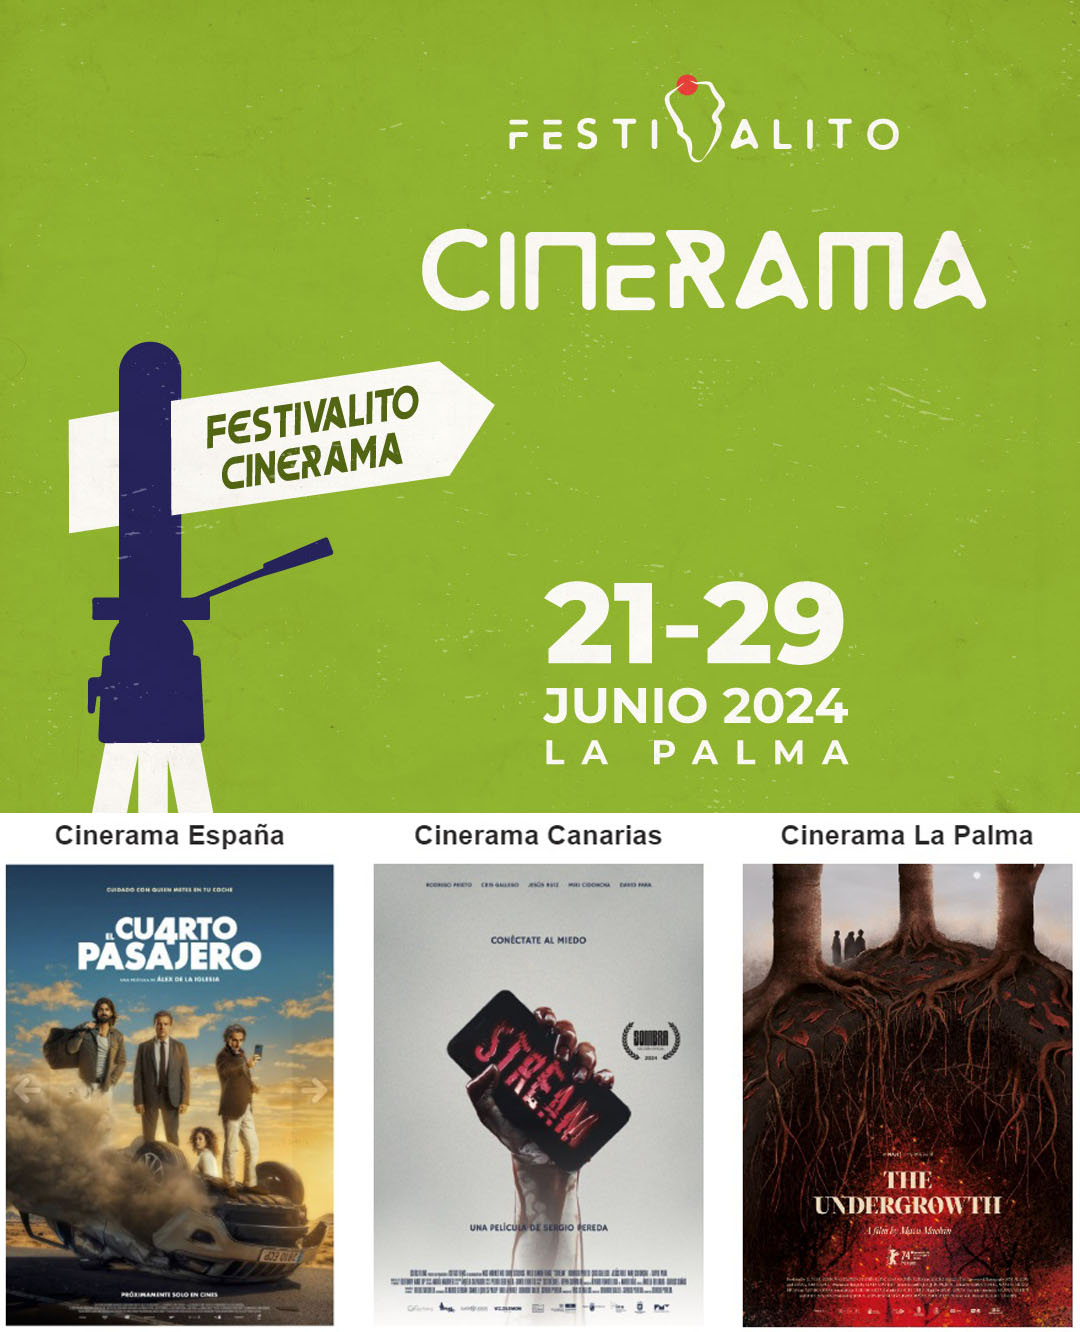 Festivalito Cinerama proyecta más de 30 filmes rodados en La Palma, Canarias y España